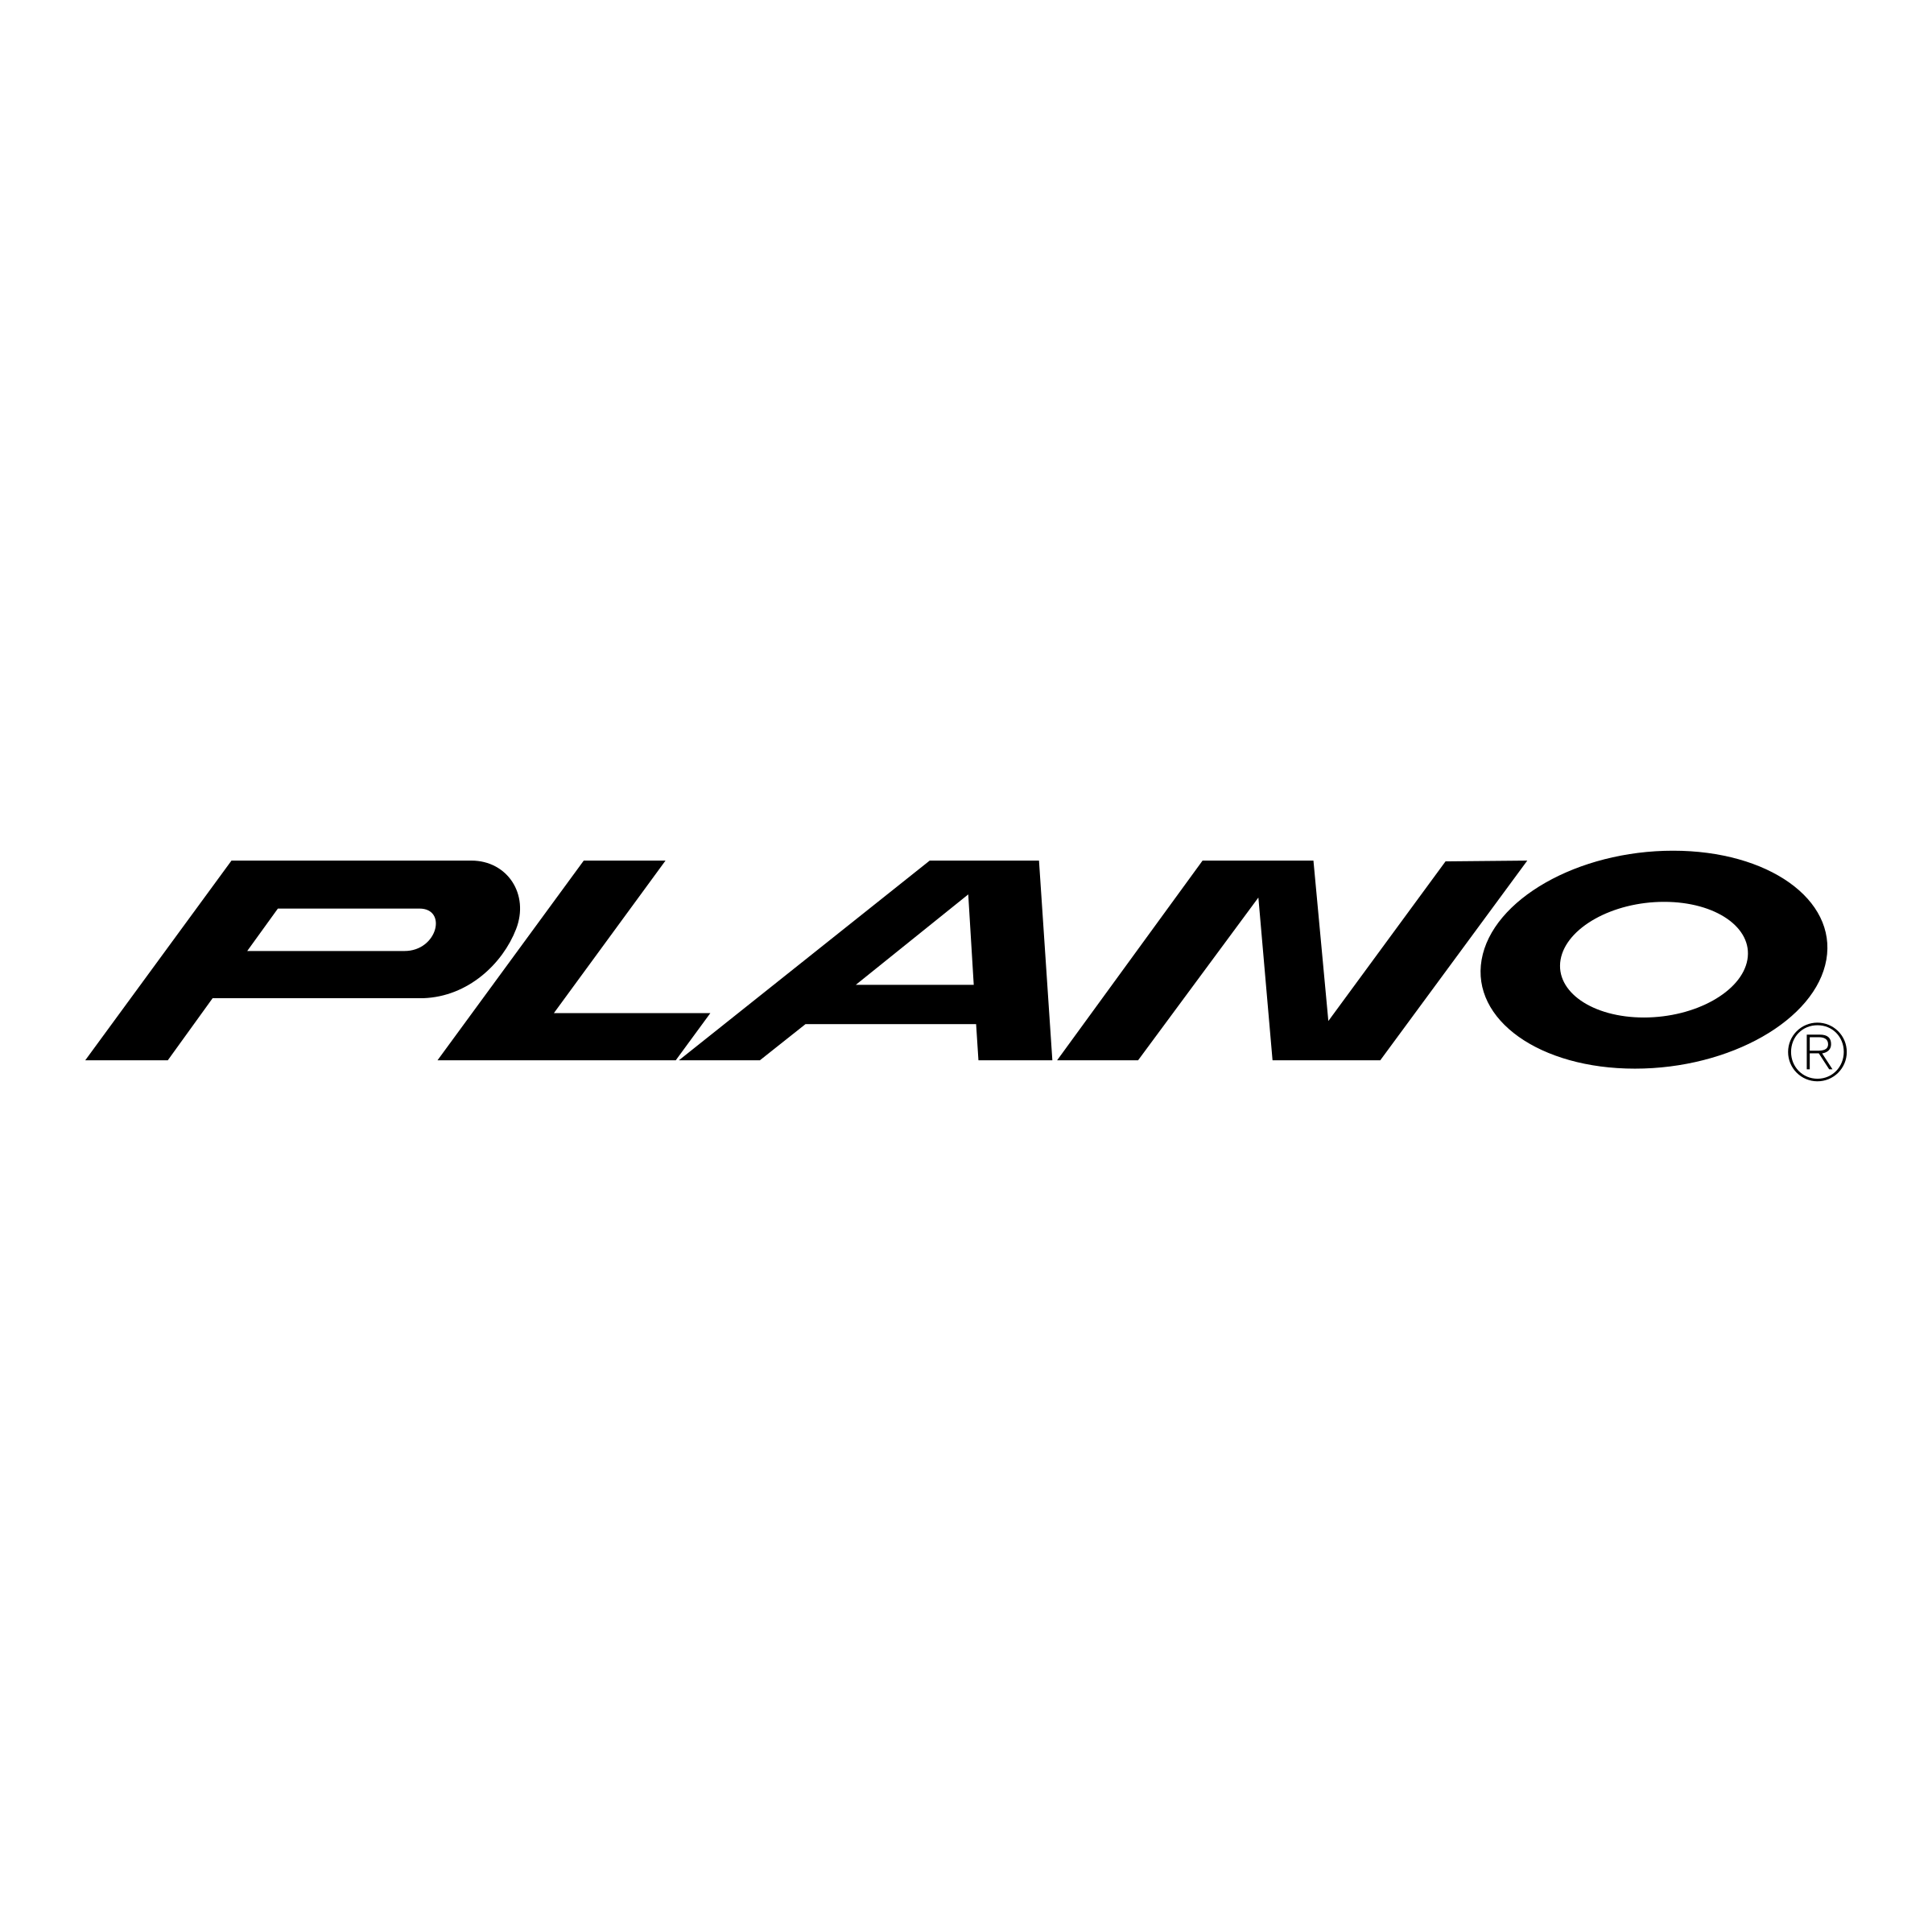 Plano Logo - Plano Logo PNG Transparent & SVG Vector